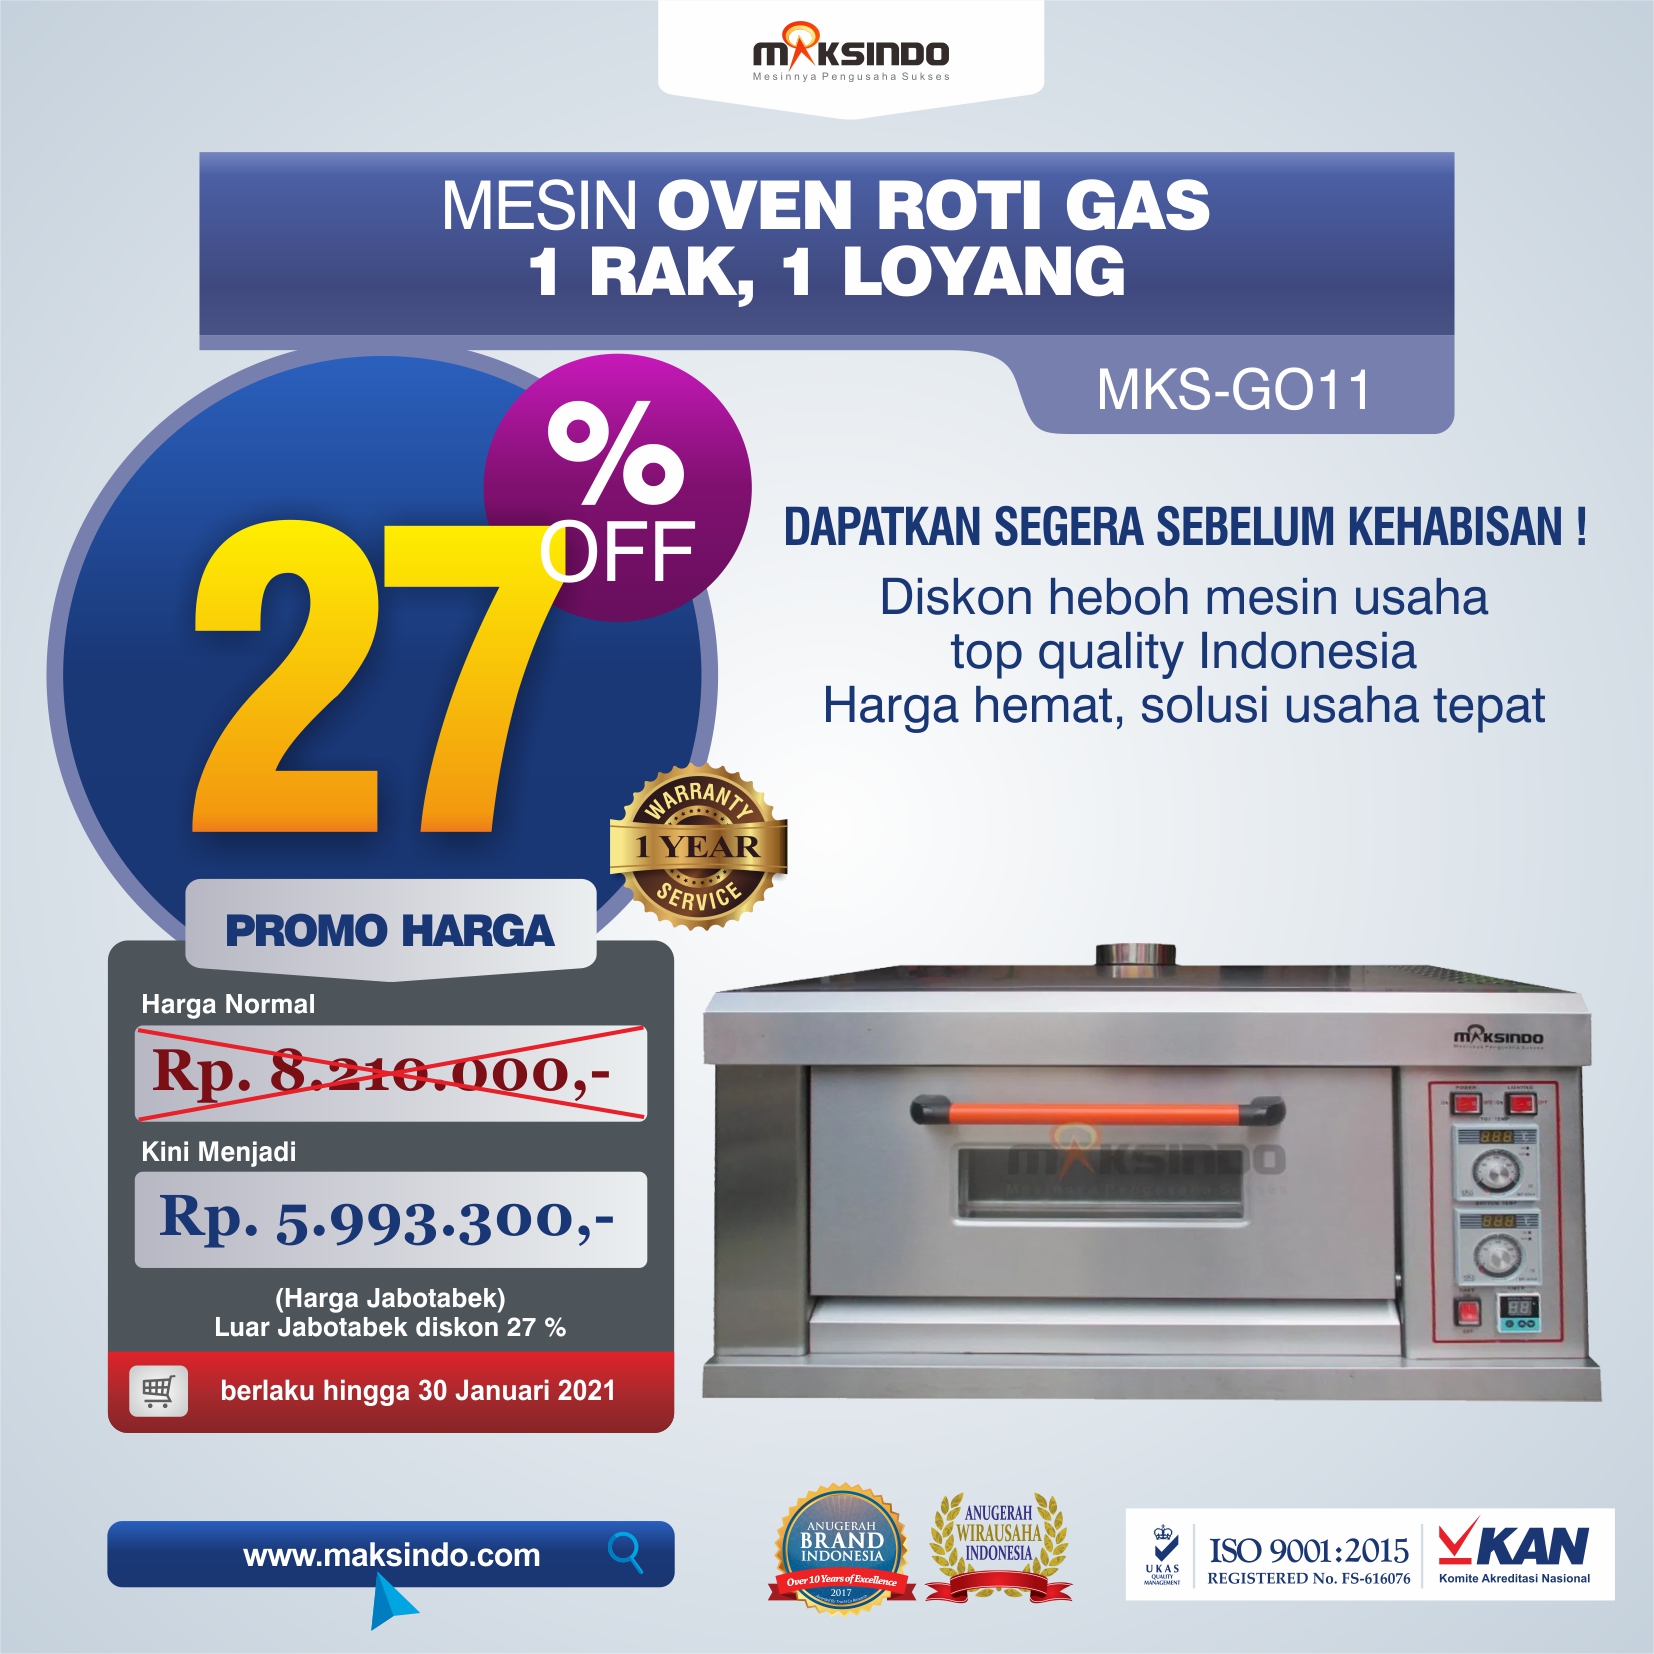 Jual Mesin Oven Roti Gas (MKS-GO11) di Semarang